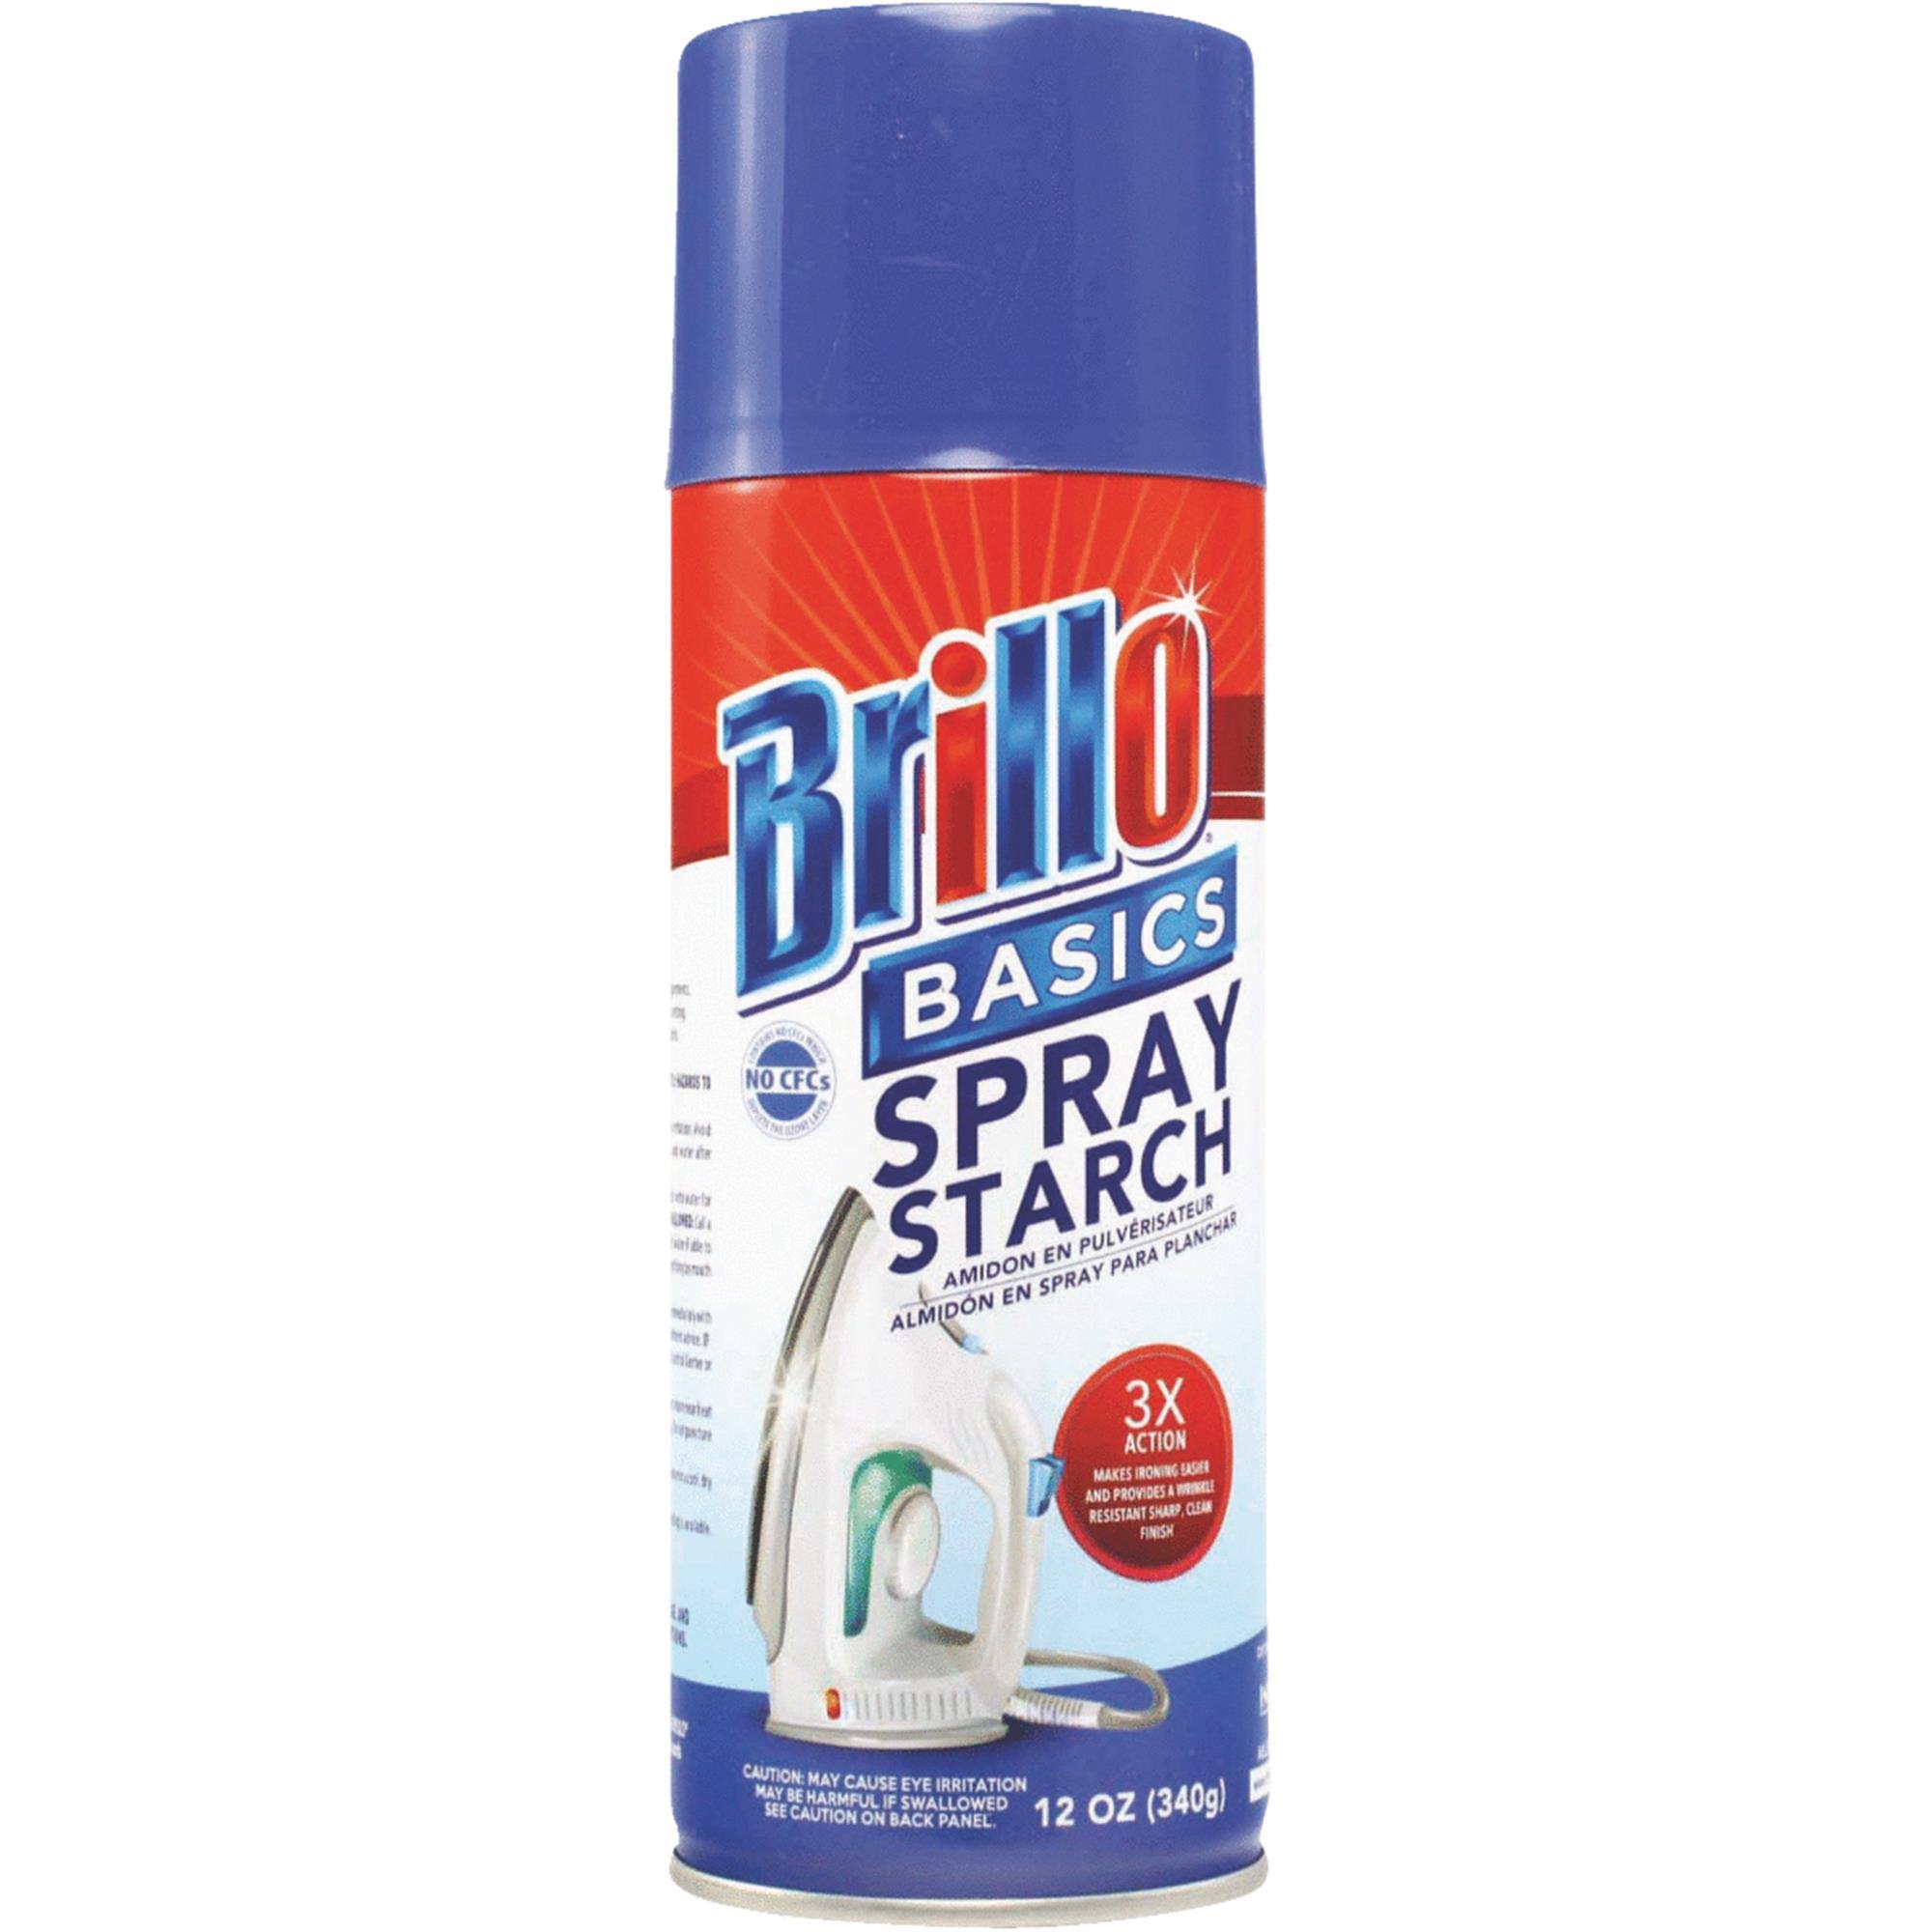 Brillo Basics Spray Starch 12 oz